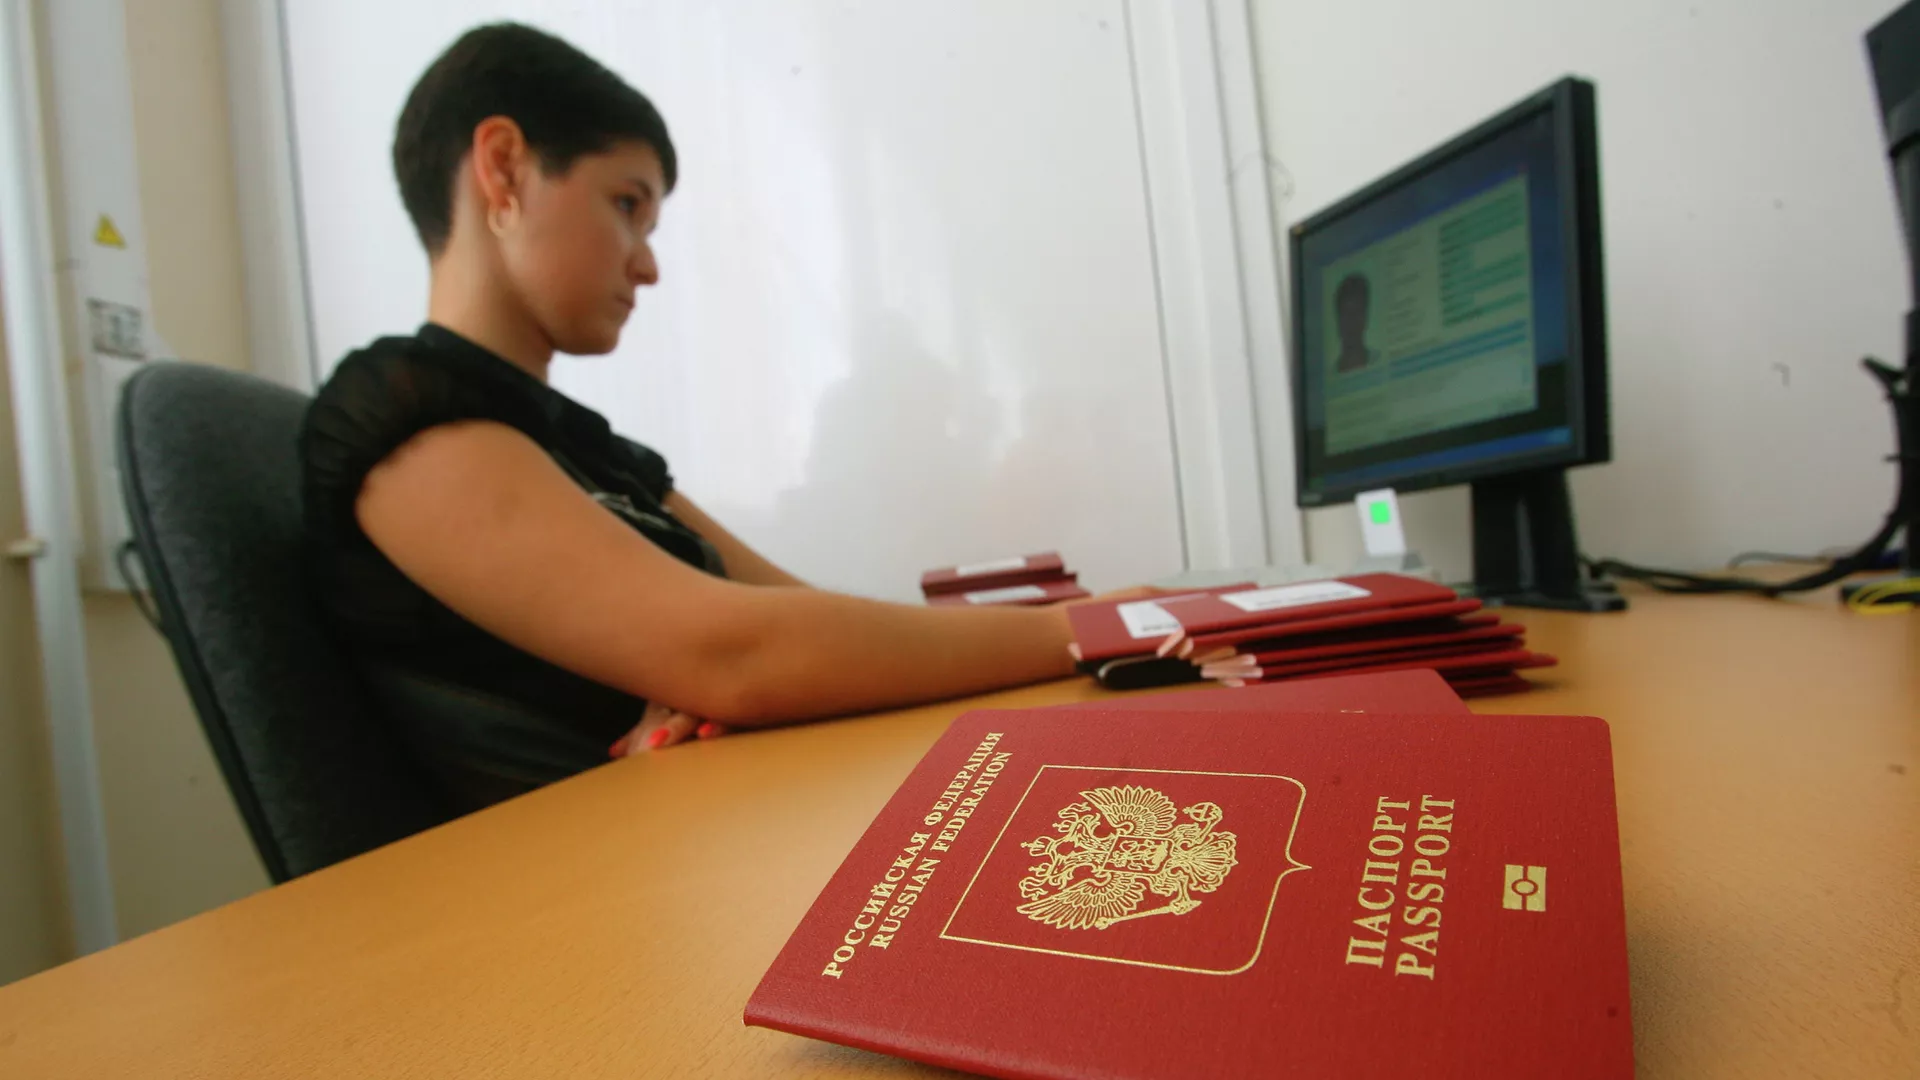 Когда возобновится прием заявлений на биометрические загранпаспорта в России, что об этом известно